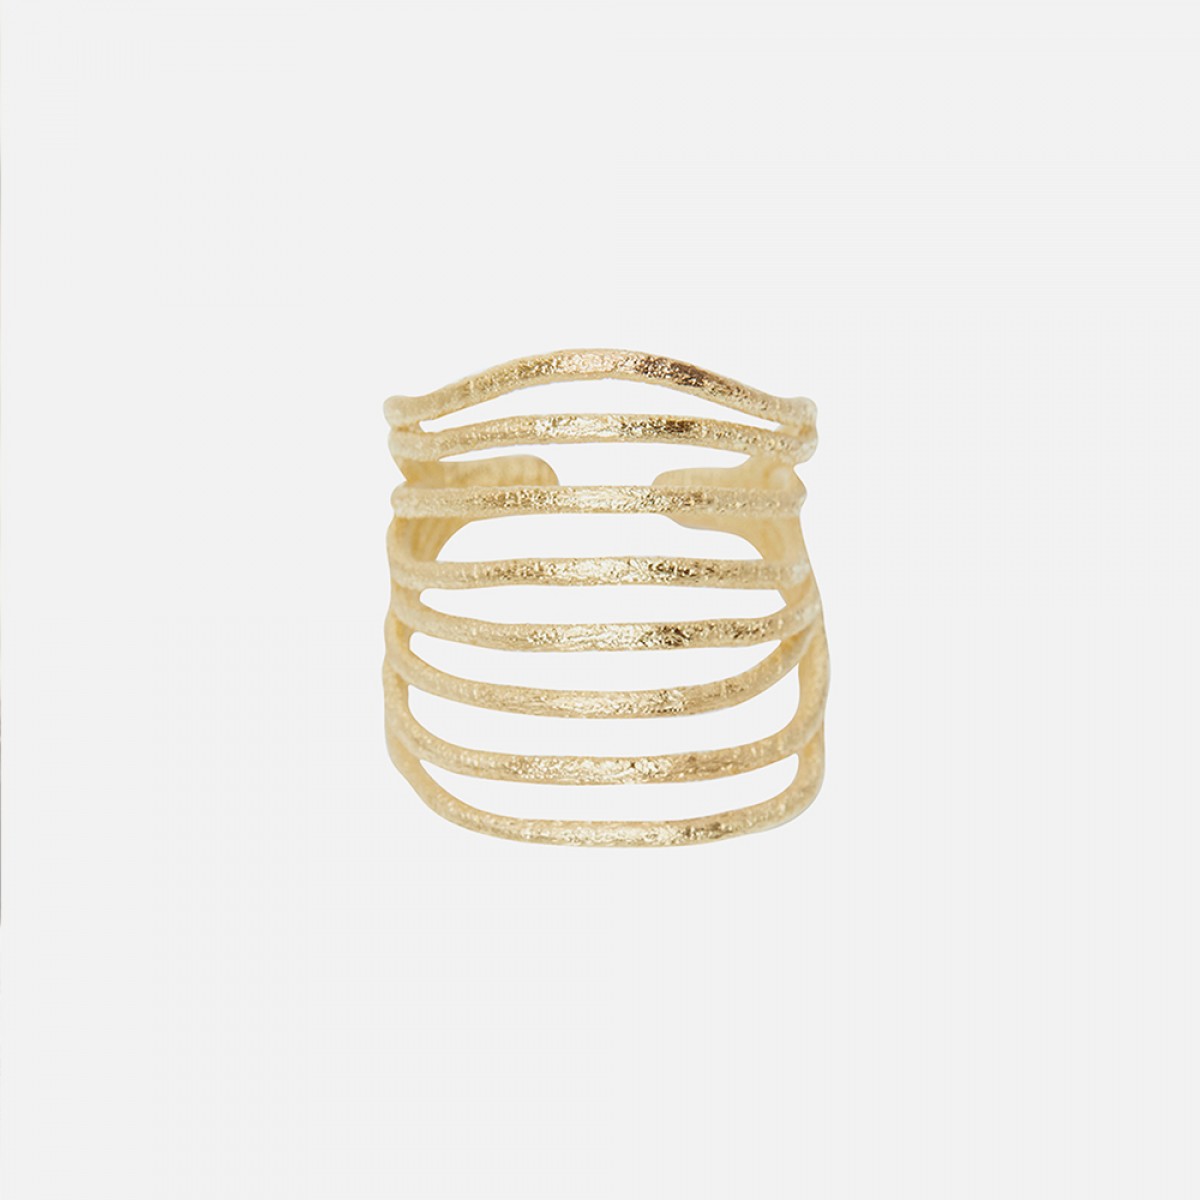 Laura Spilker – Ring "Muschel M" 18 kt Goldplattiert